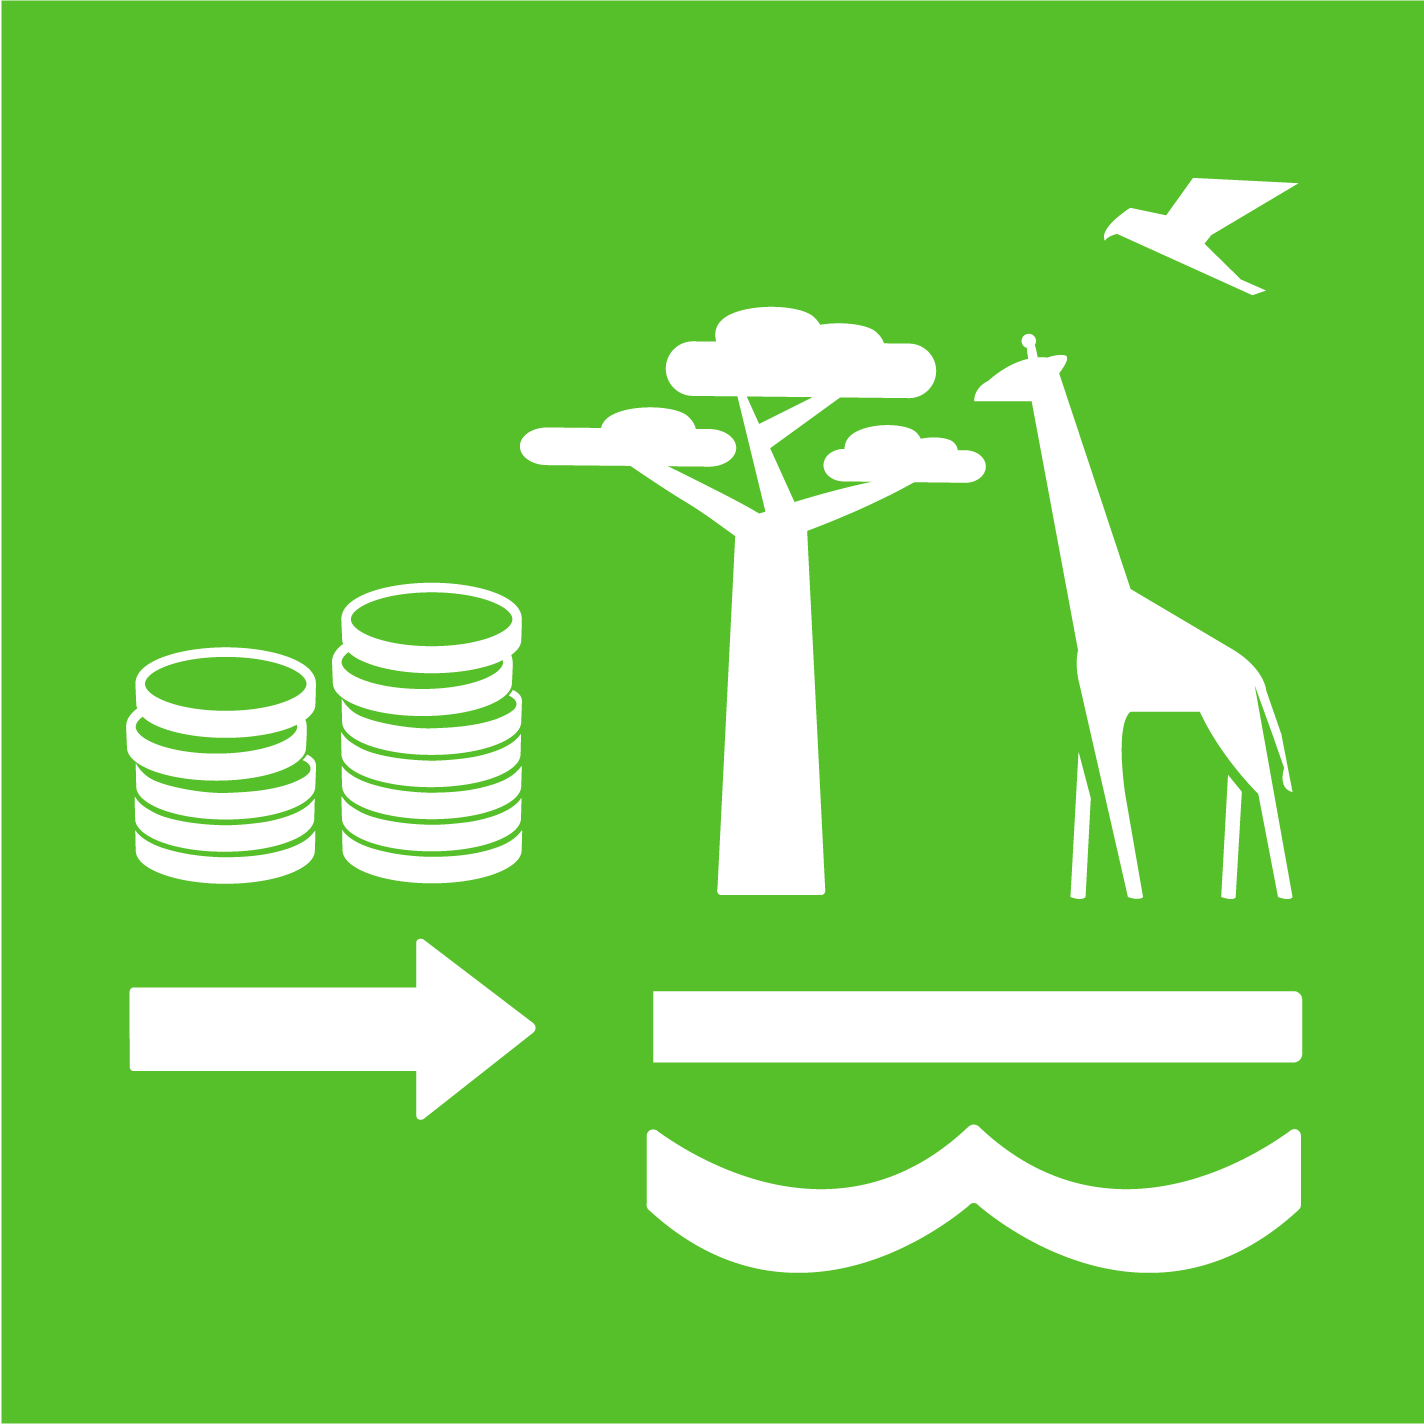 15.a - Aumentar los Recursos Financieros para Conservar y Utilizar Sosteniblemente el Ecosistema y la Biodiversidad